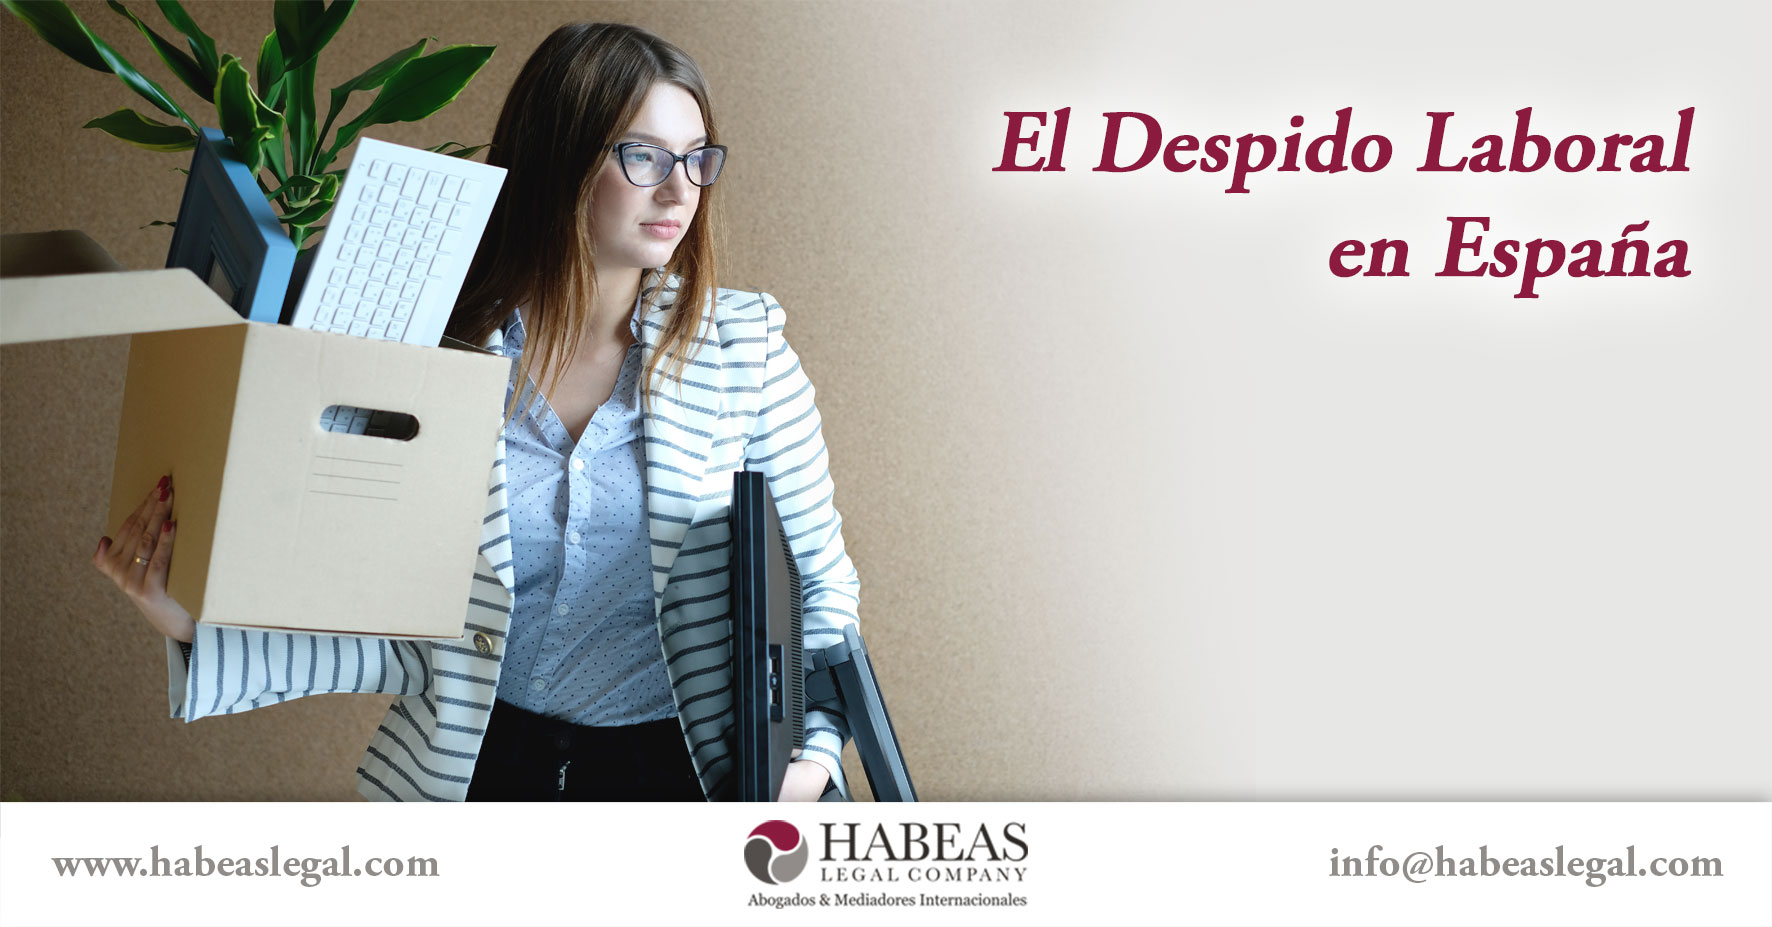 El Despido Laboral Espana Habeas Legal - Abogados Internacionales especializados en Extranjería, Inmigración y Laboral_respaldo